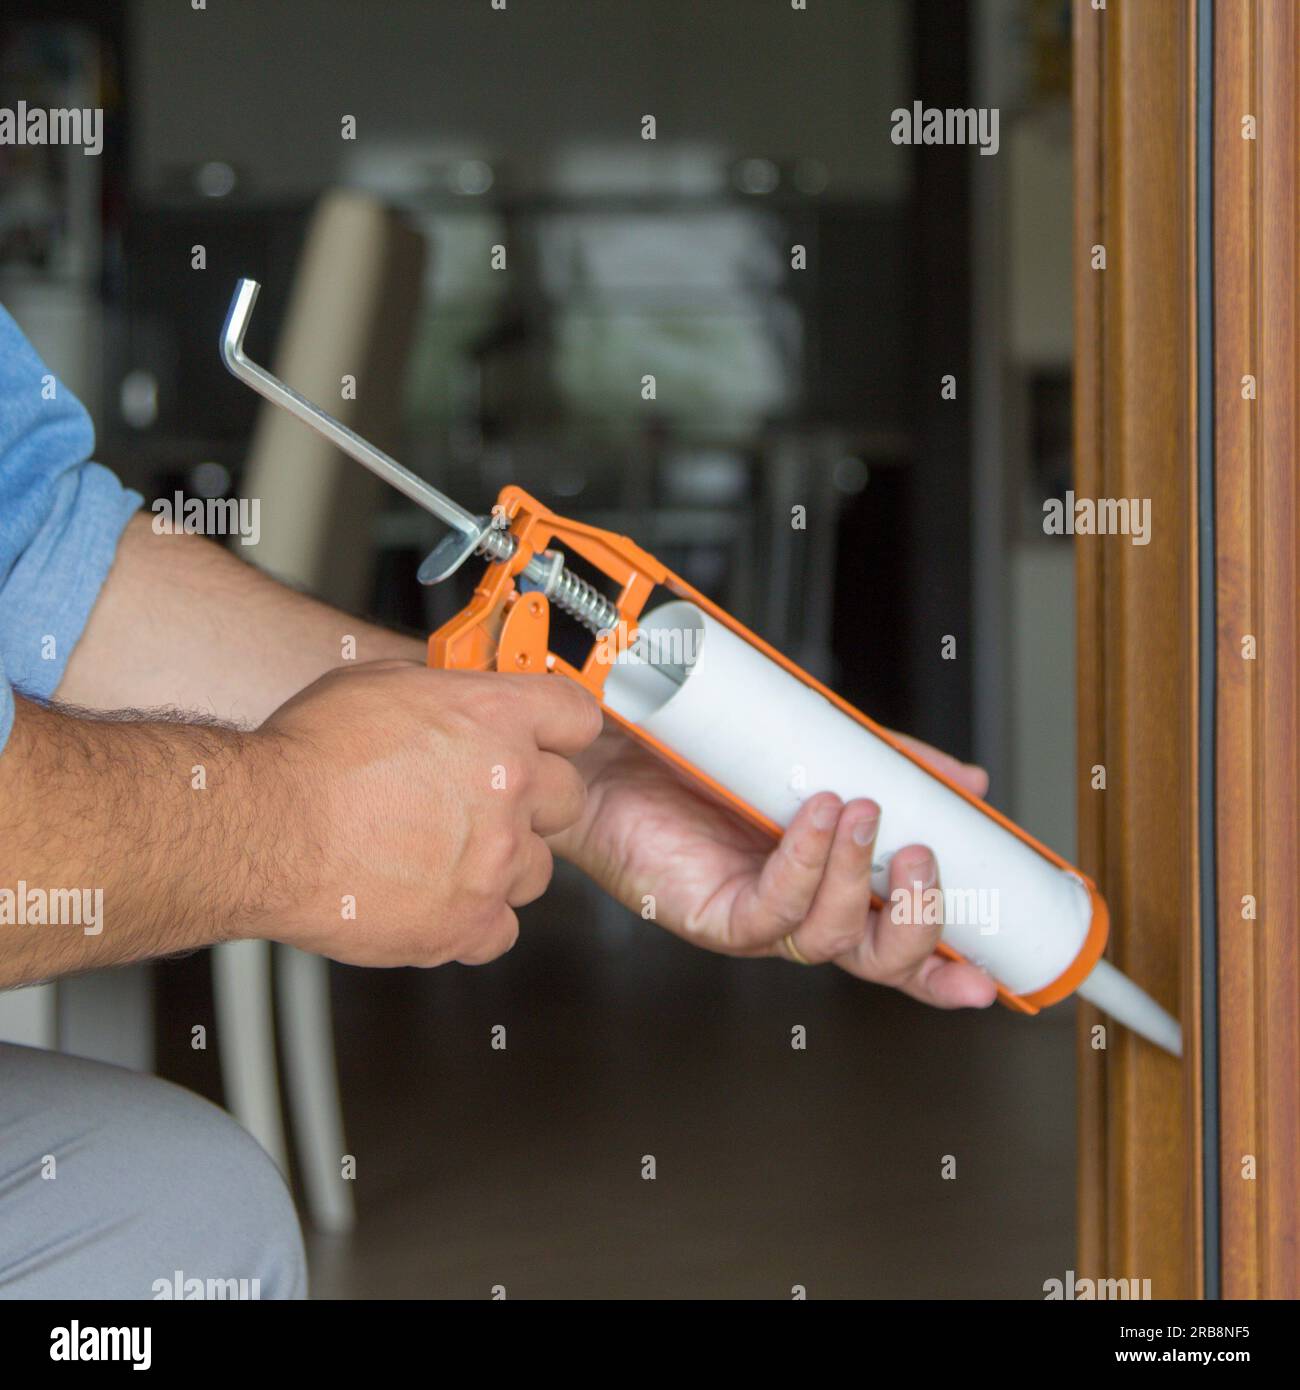 Immagine delle mani di un tuttofare che con una pistola al silicone installa e sigilla porte e finestre contro le correnti d'aria. Miglioramenti all'isolamento termico domestico. Foto Stock